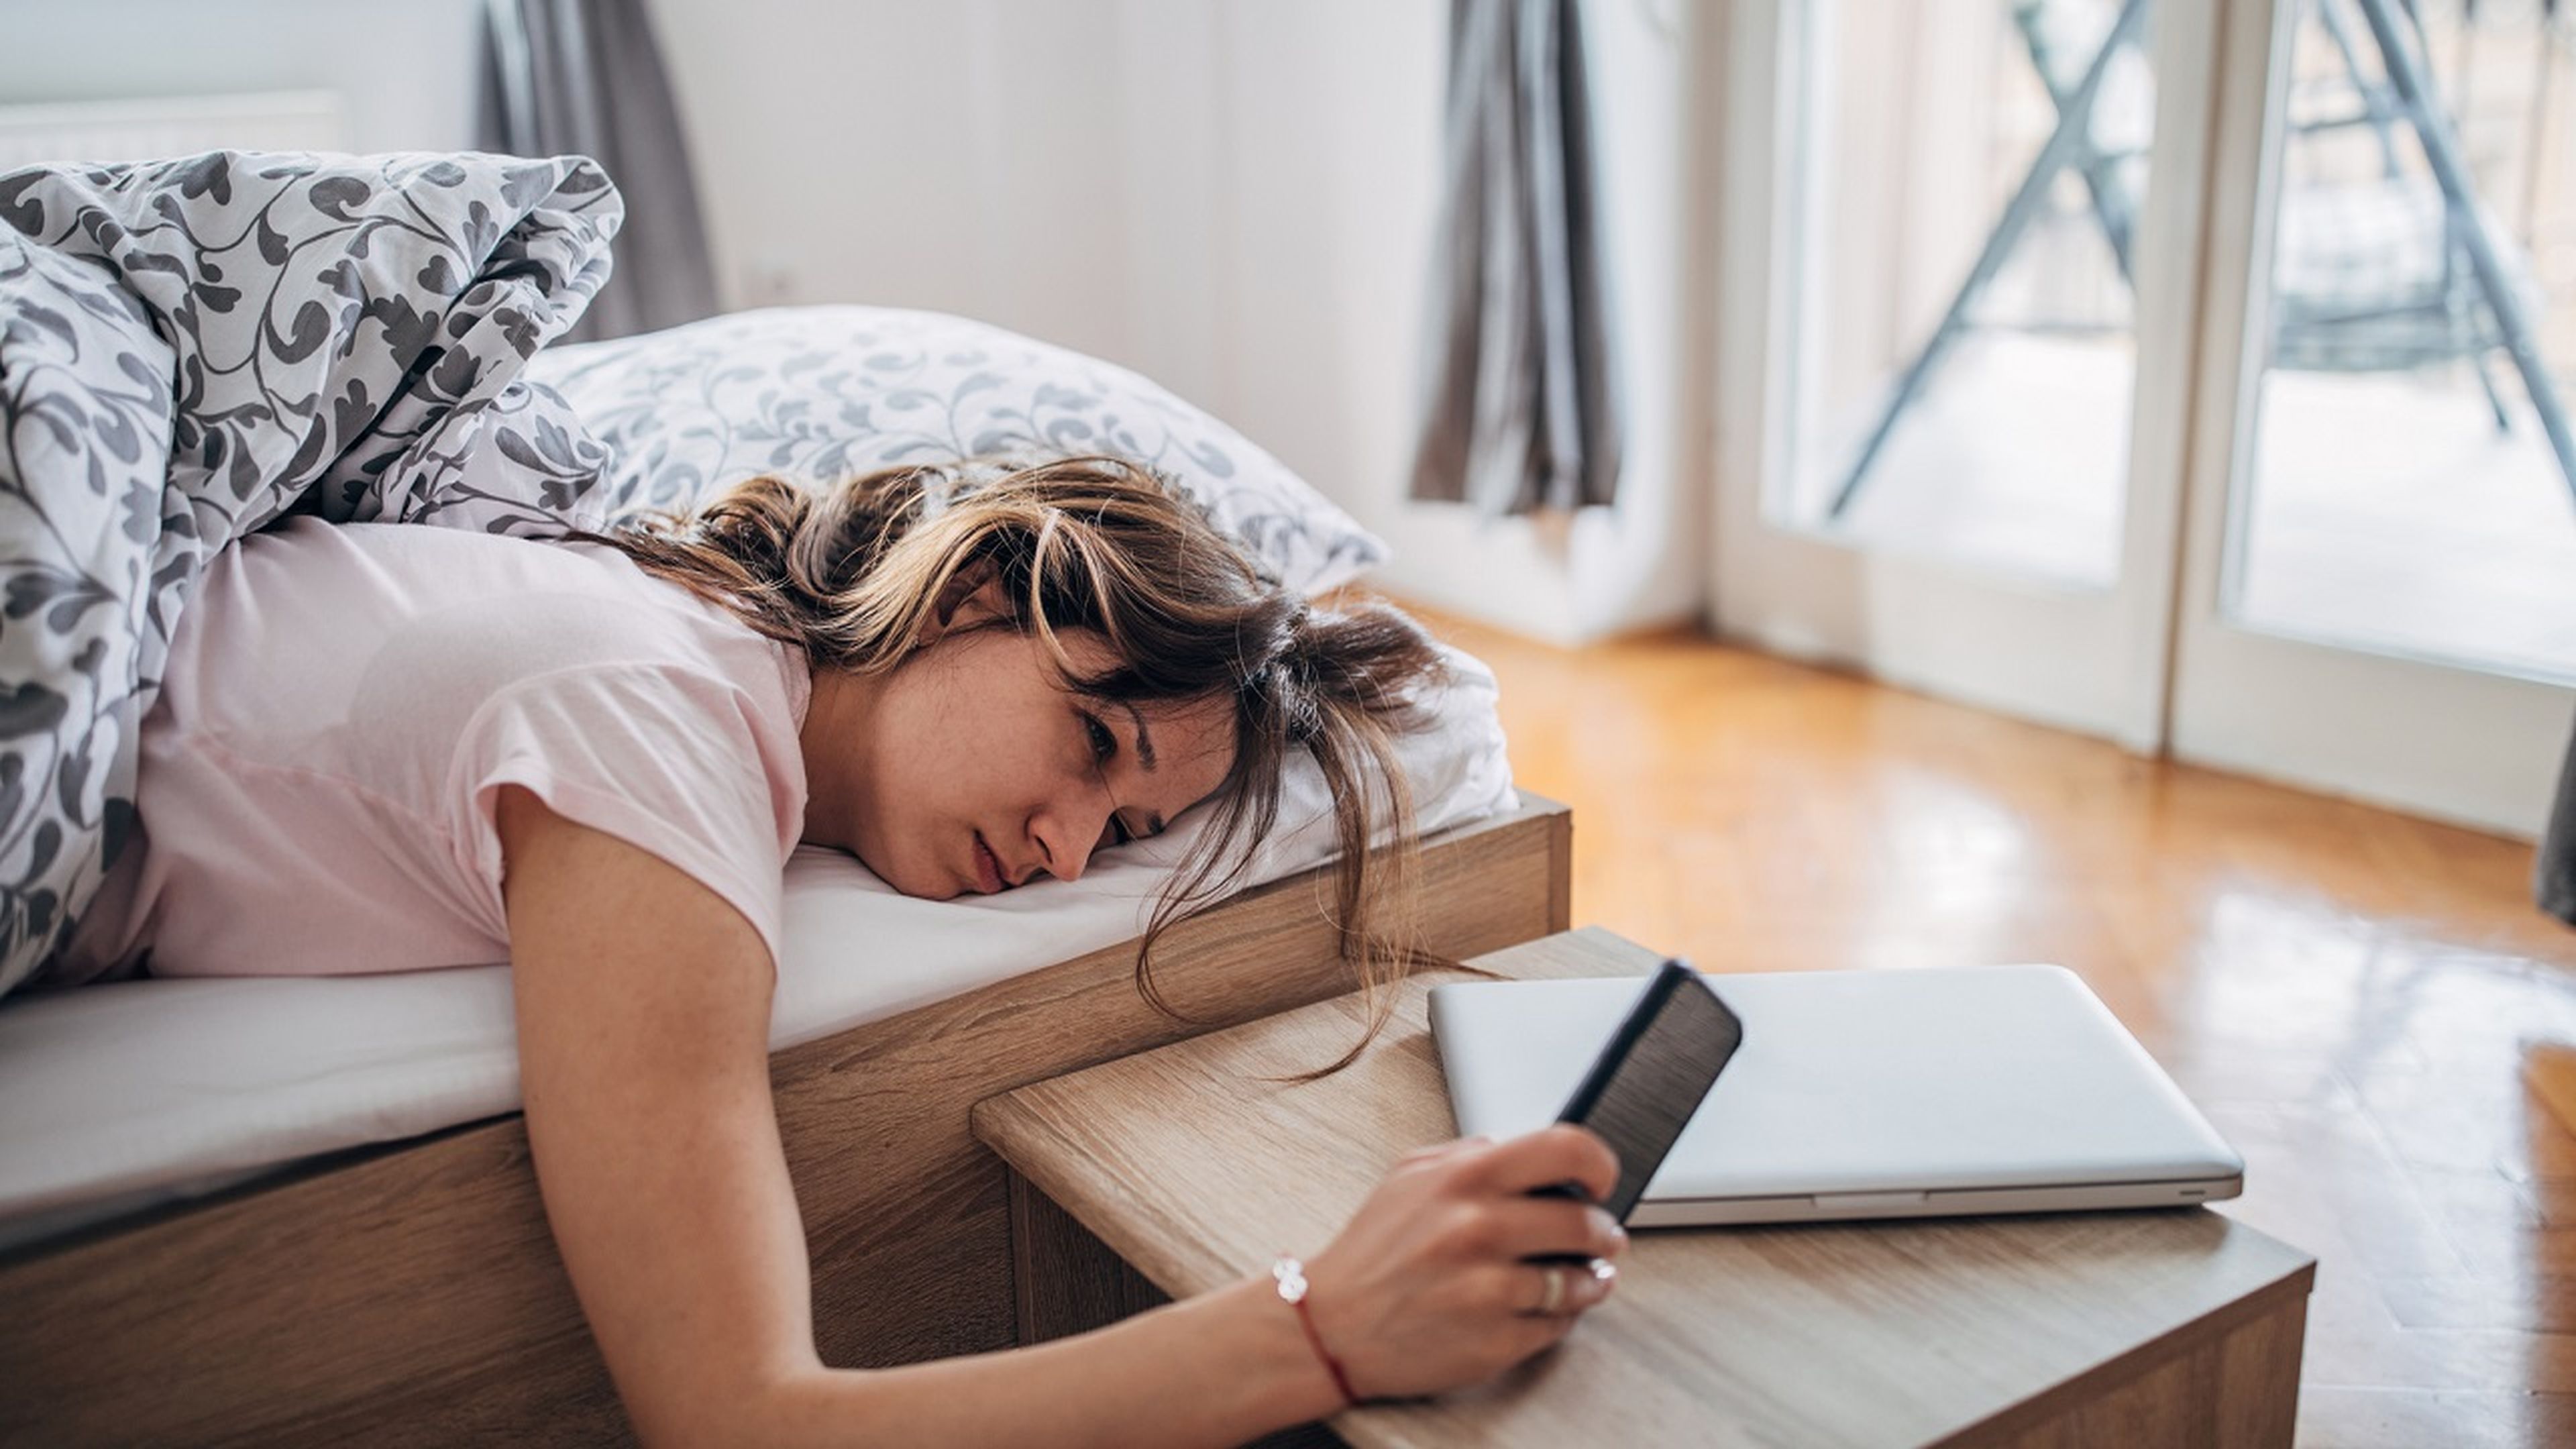 Un estudio lo confirma: dormir â€œ5 minutos mÃ¡sâ€� puede ser bueno para tu salud